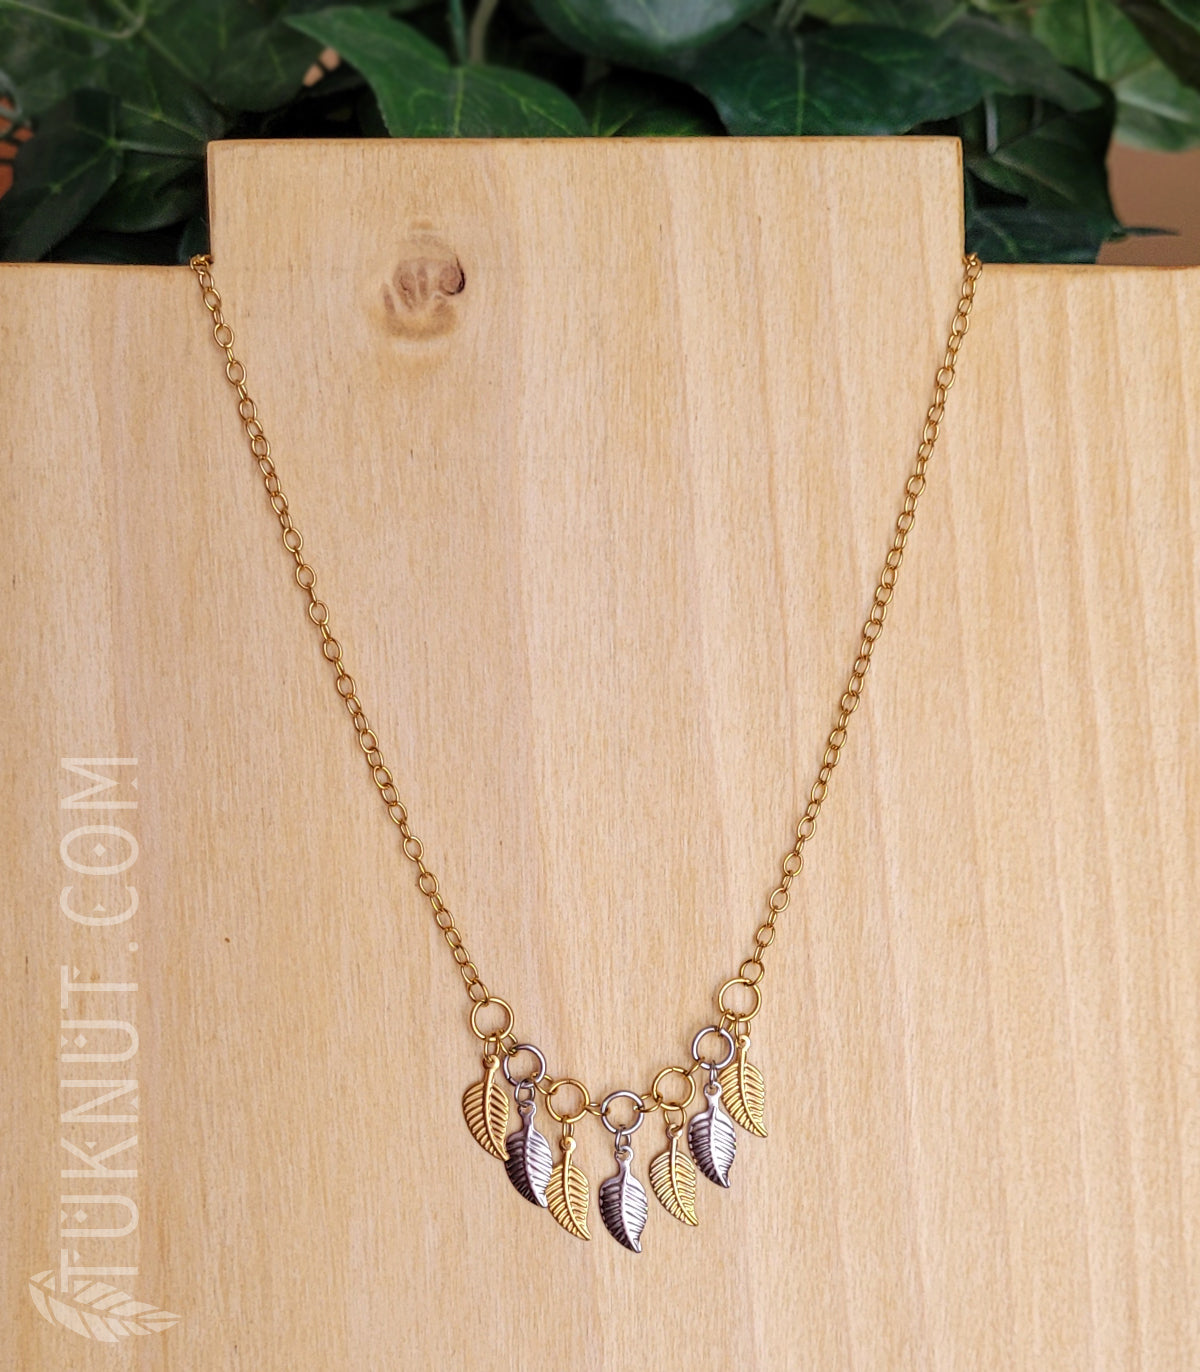 Collier d'inspiration autochtone en acier inoxydable avec petites feuilles dorées et argentées (couleurs : or et argent) TUKNUT